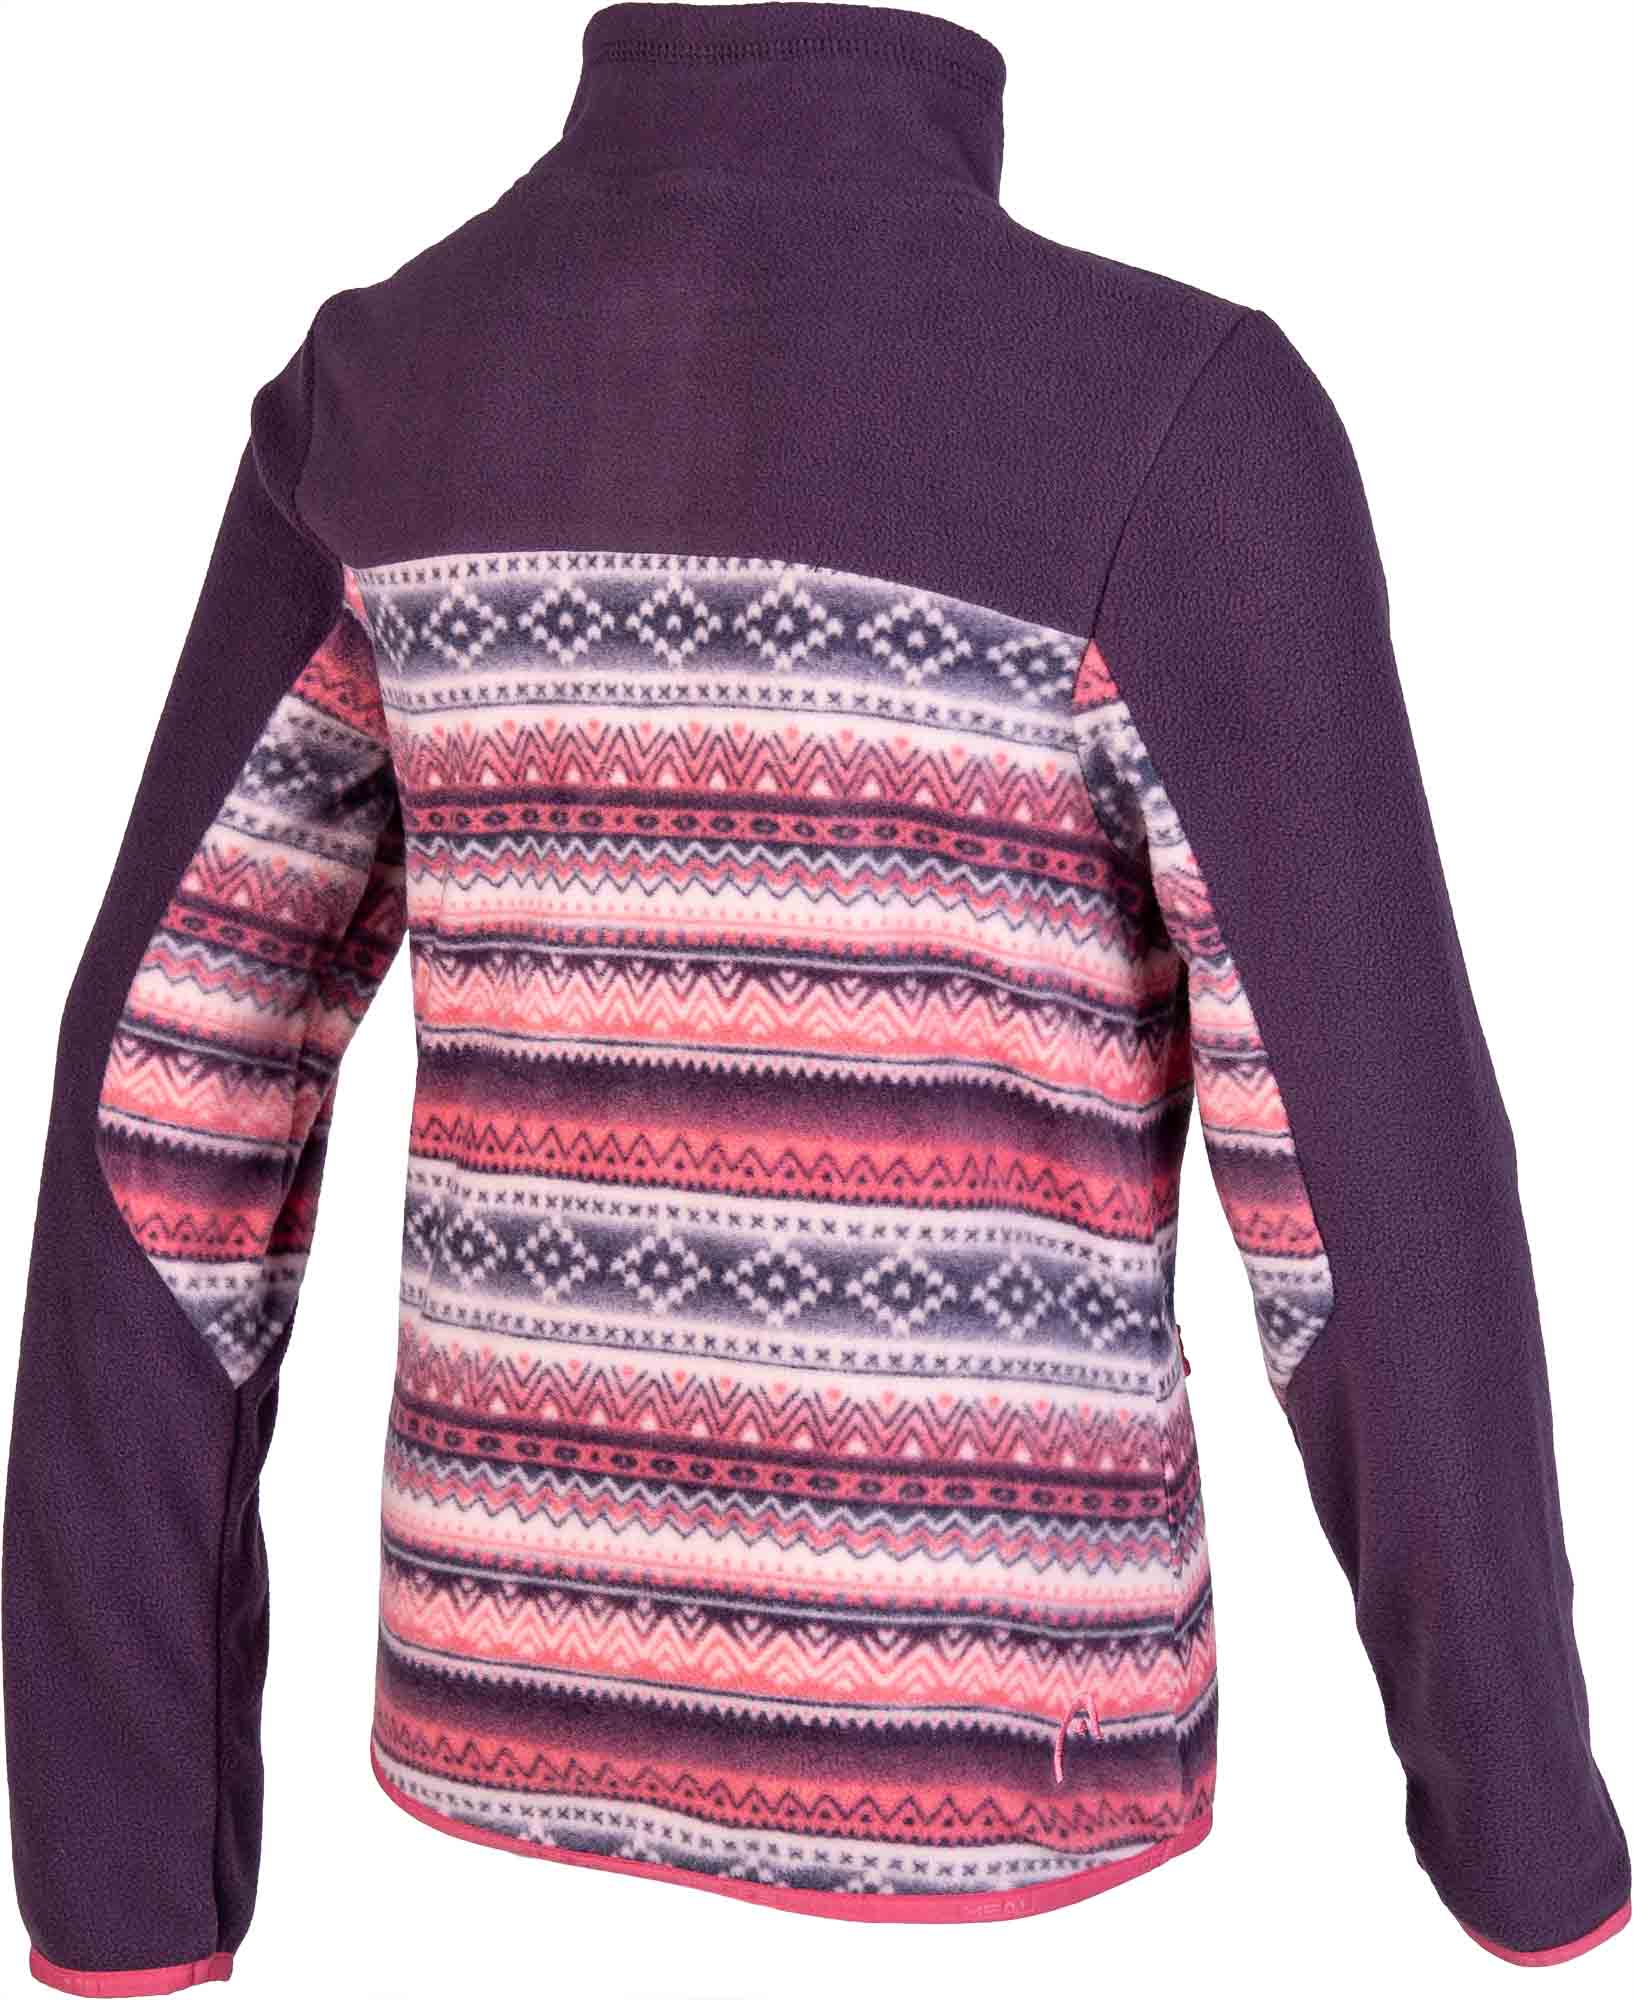 Girls’ fleece sweatshirt